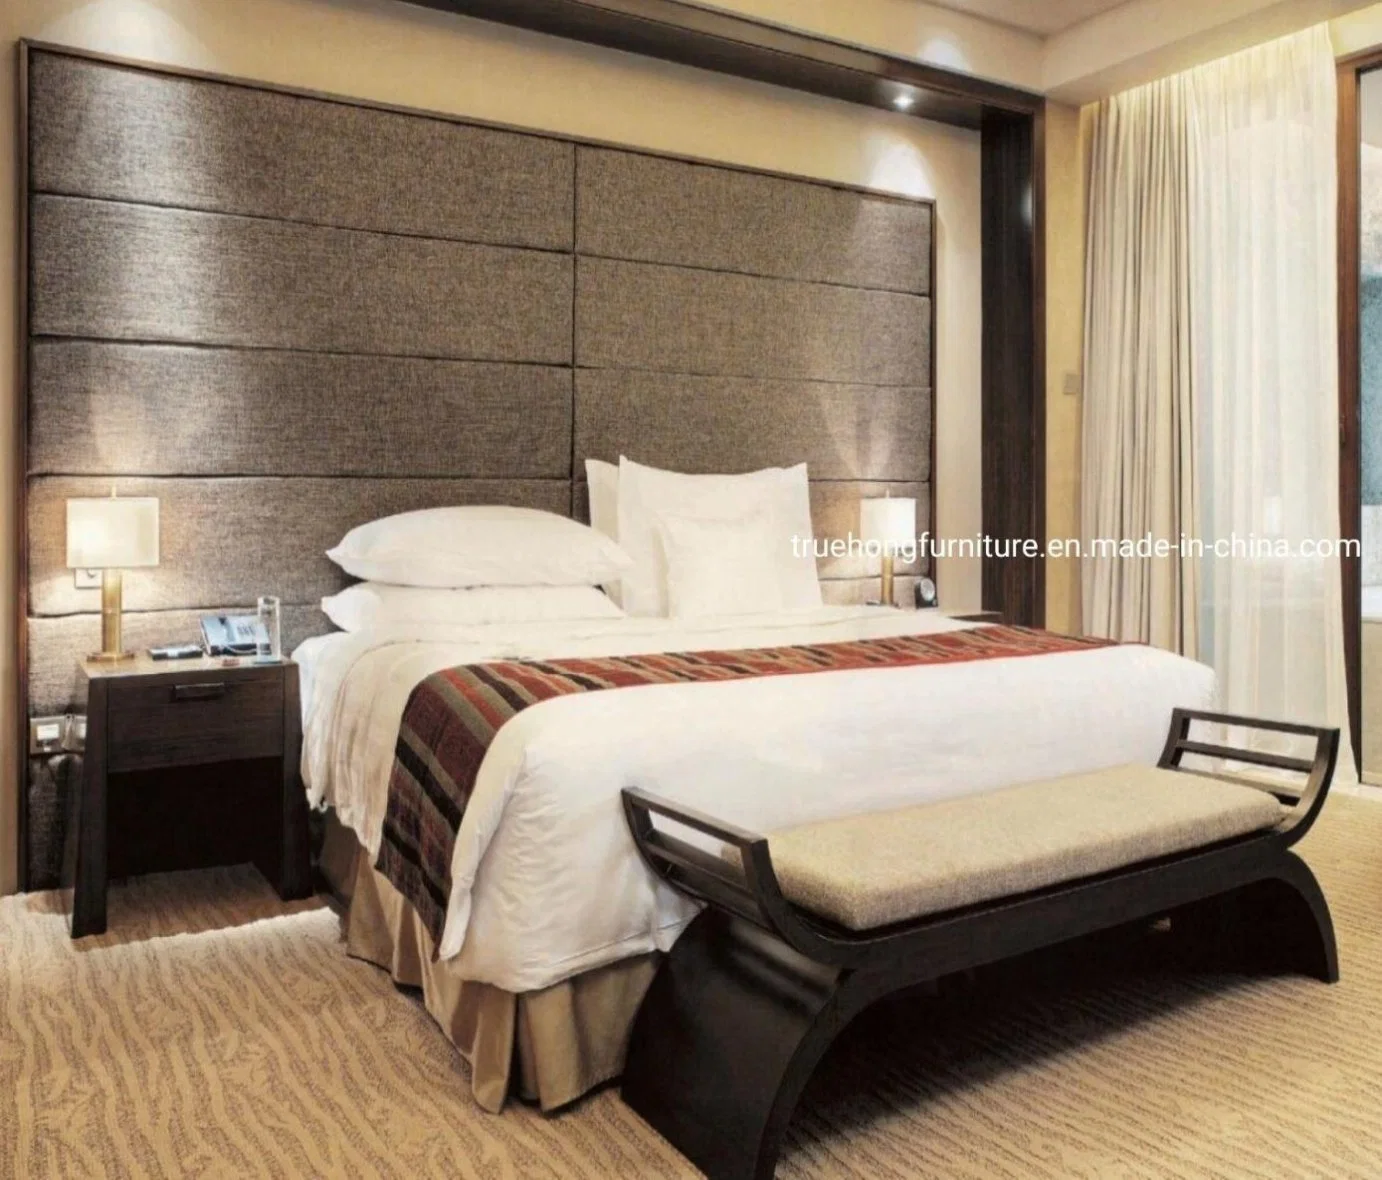 أثاث فندق 5 نجوم مفروشات فندقية مخصصة احترافية لغرف النوم في الفندق